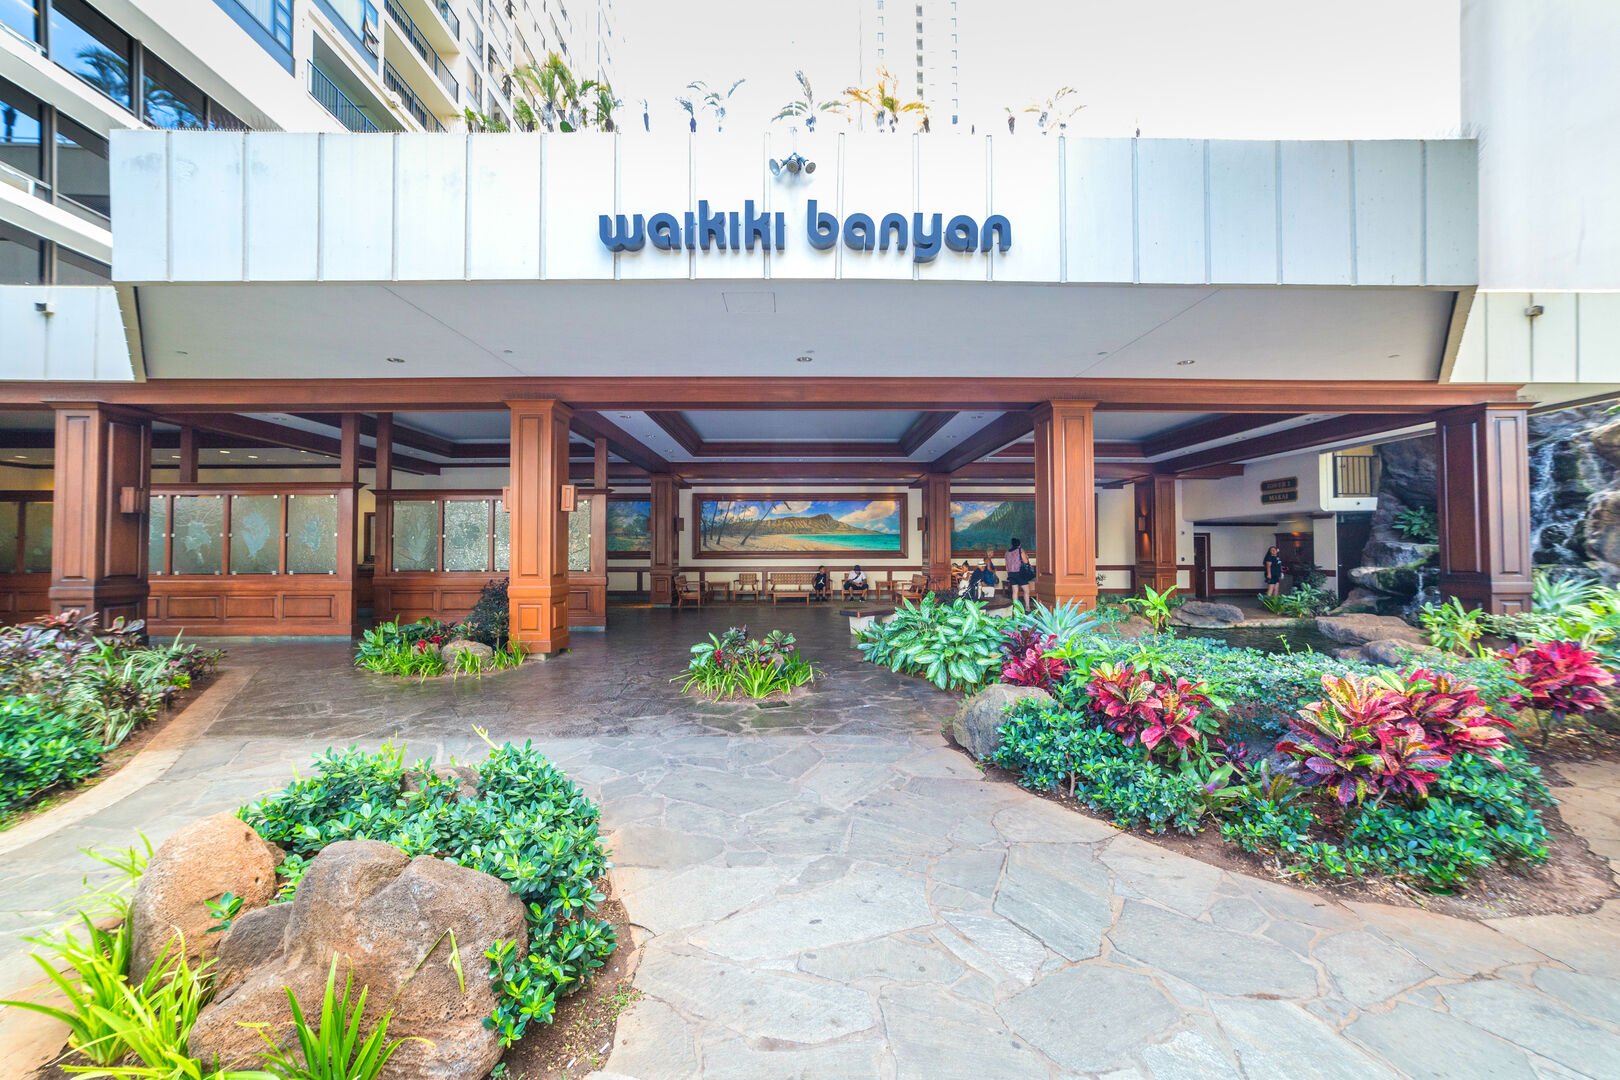 Waikiki Banyan entrance, lobby open 24/7